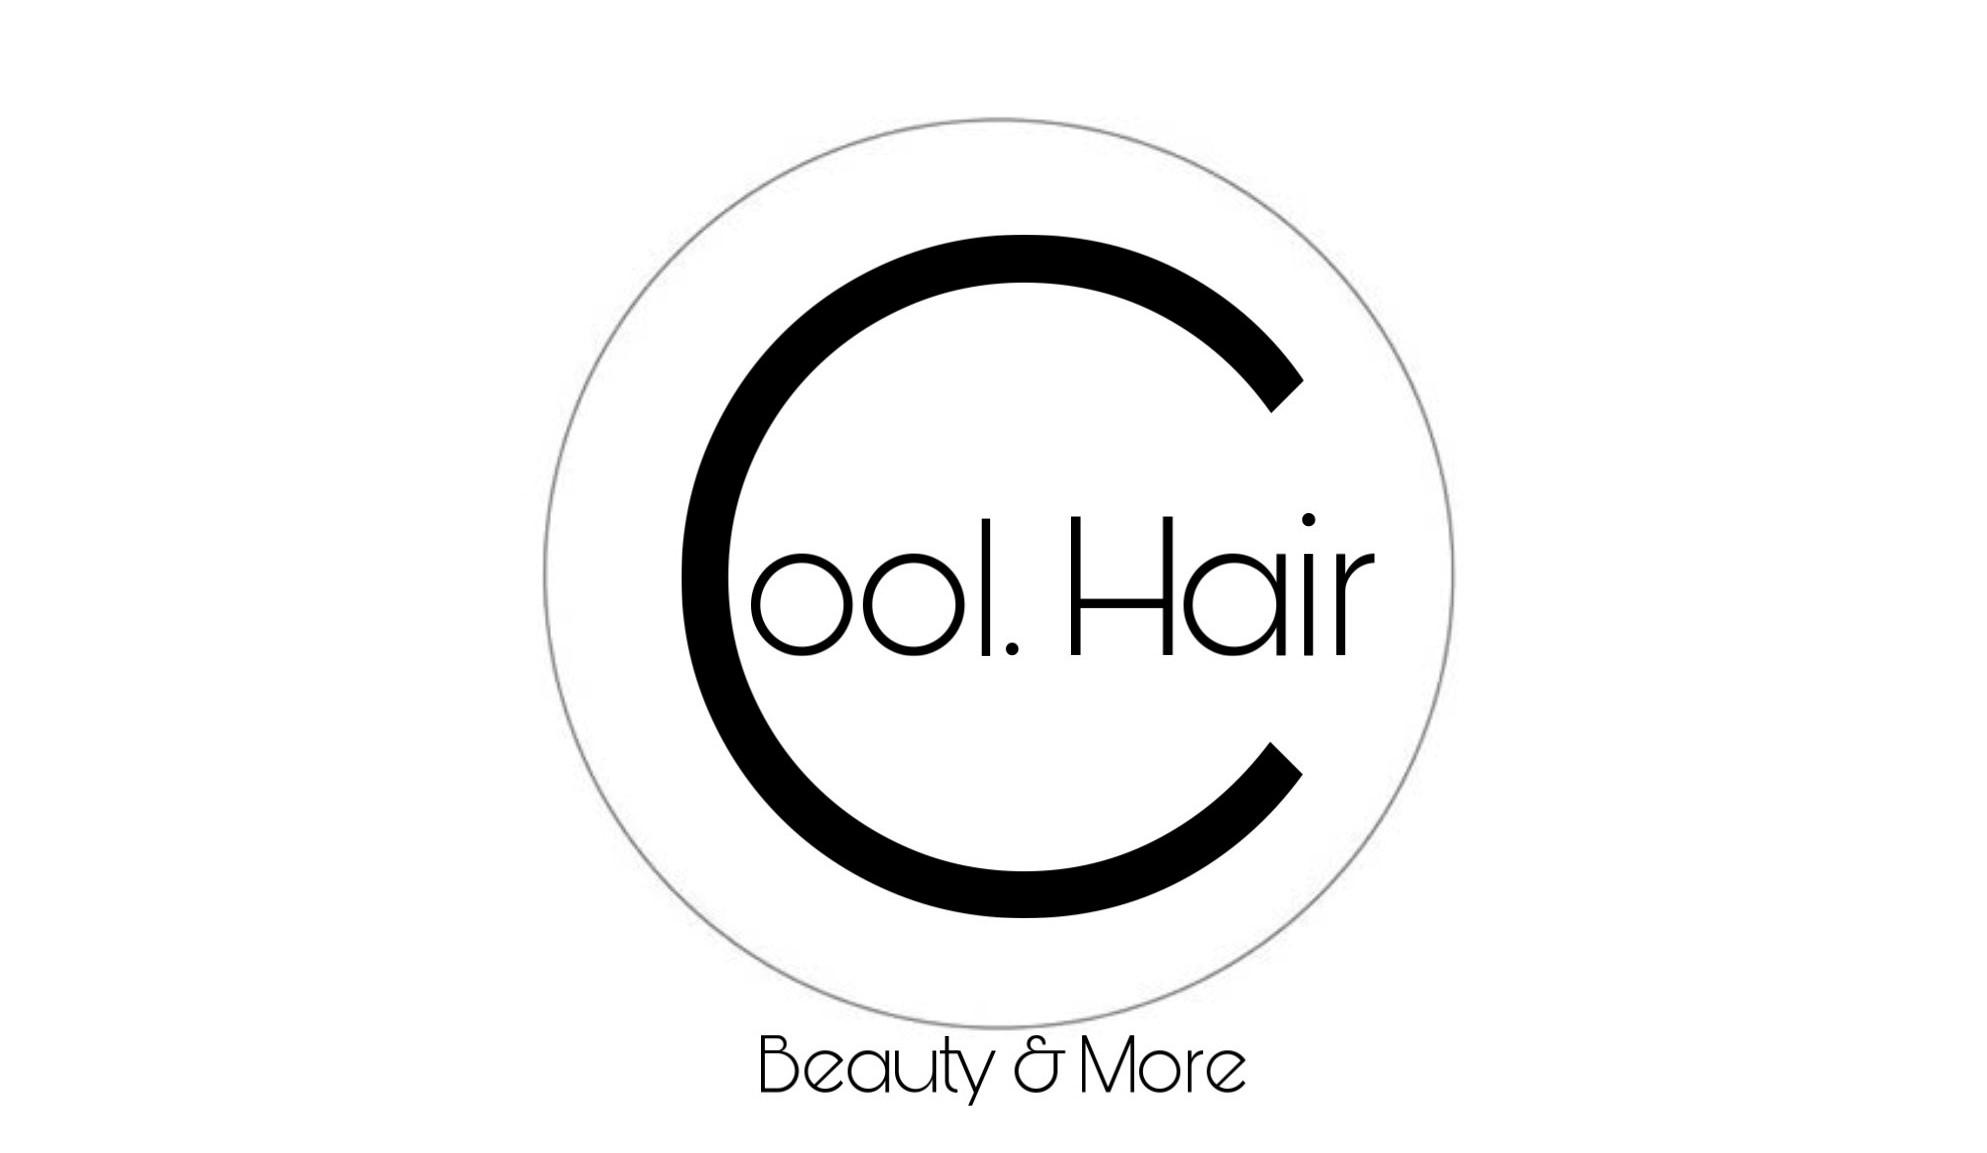 Cool Hair Salon: Chất lượng tạo nên mái tóc hoàn mỹ - Kinh Doanh Trẻ